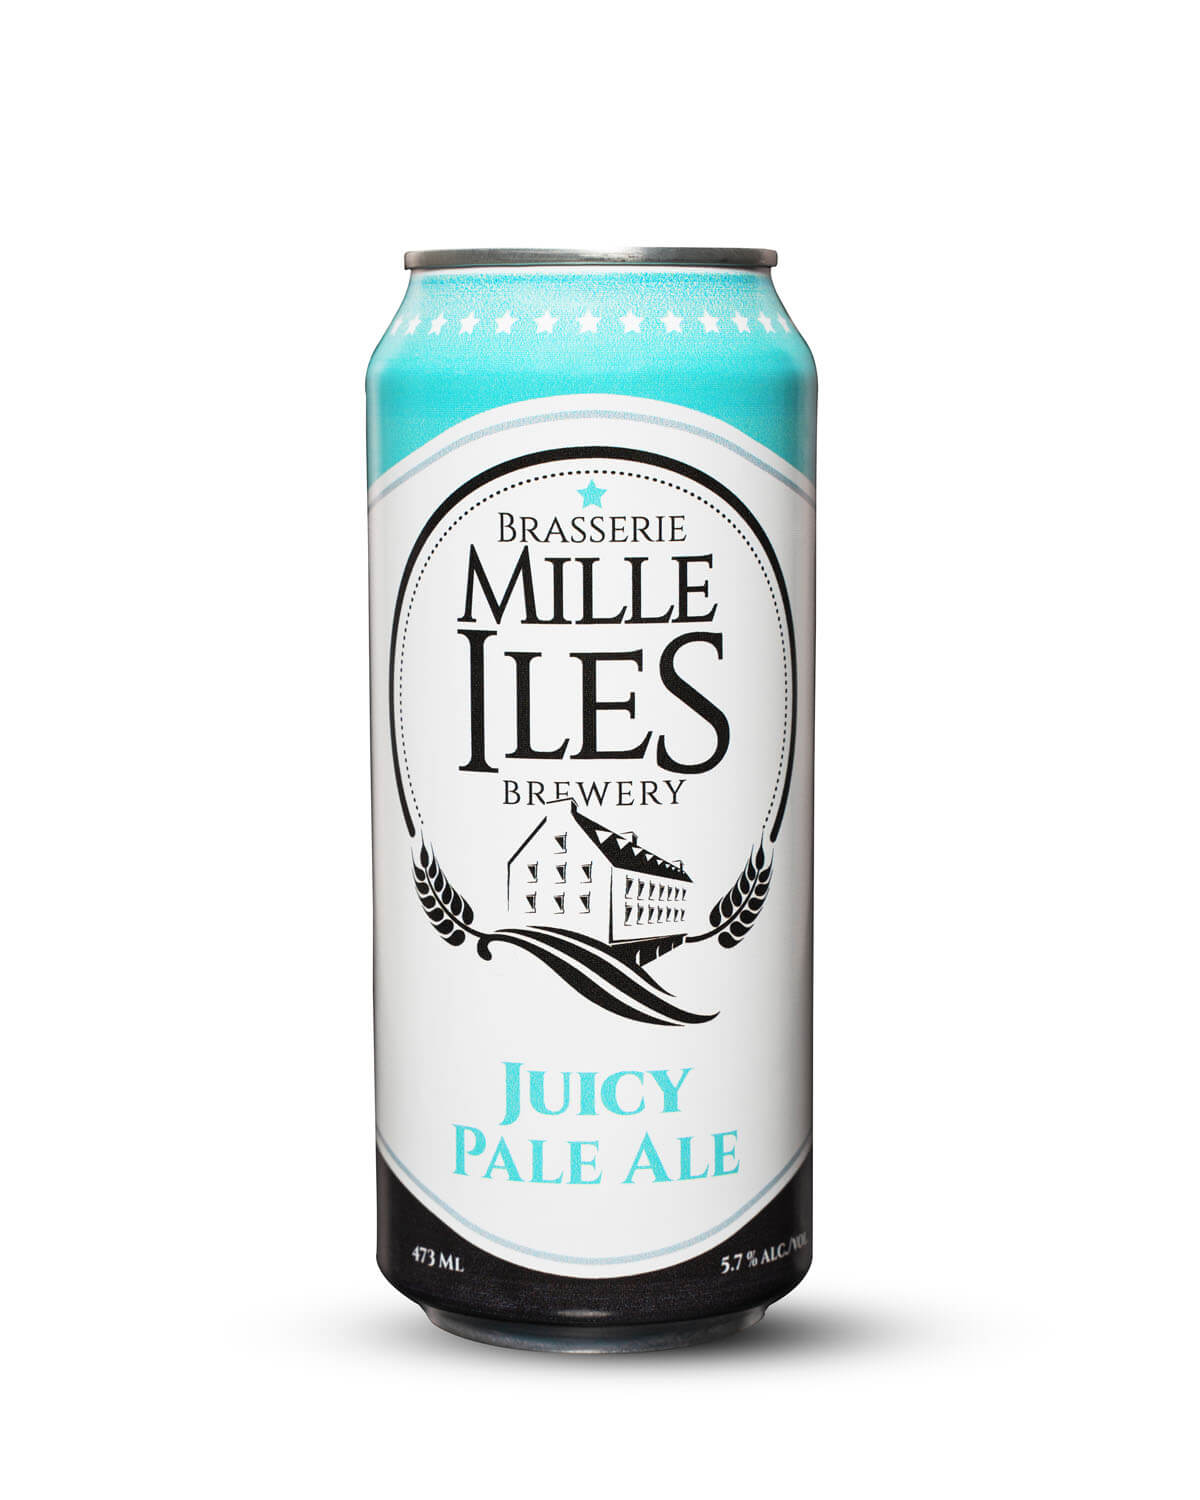 Juicy Pale ale